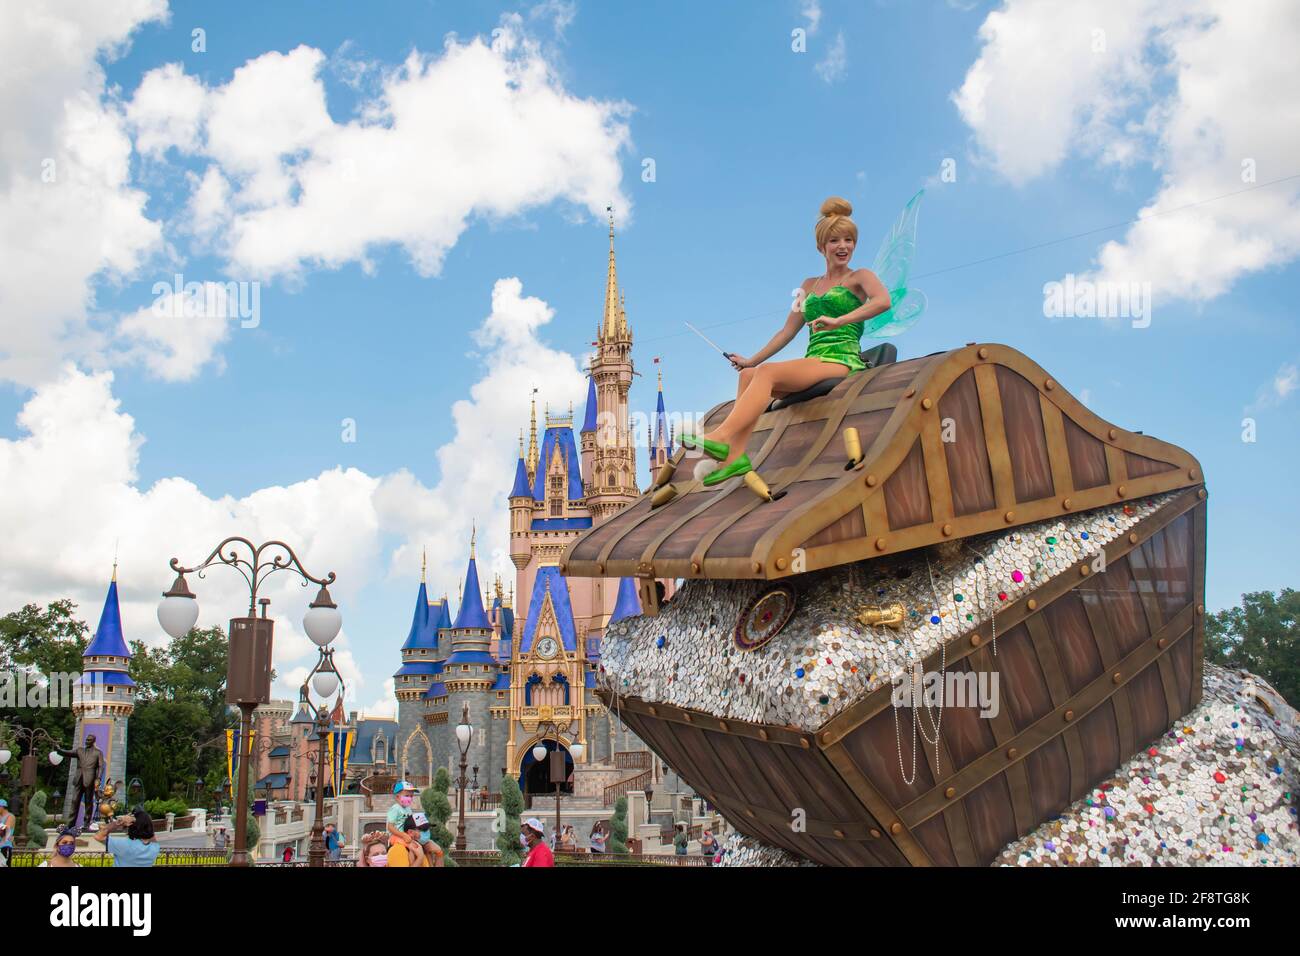 Orlando, Florida. 02. September 2020. Tinker Bell auf einem wunderschönen Festwagen im Magic Kingdom (370) Stockfoto